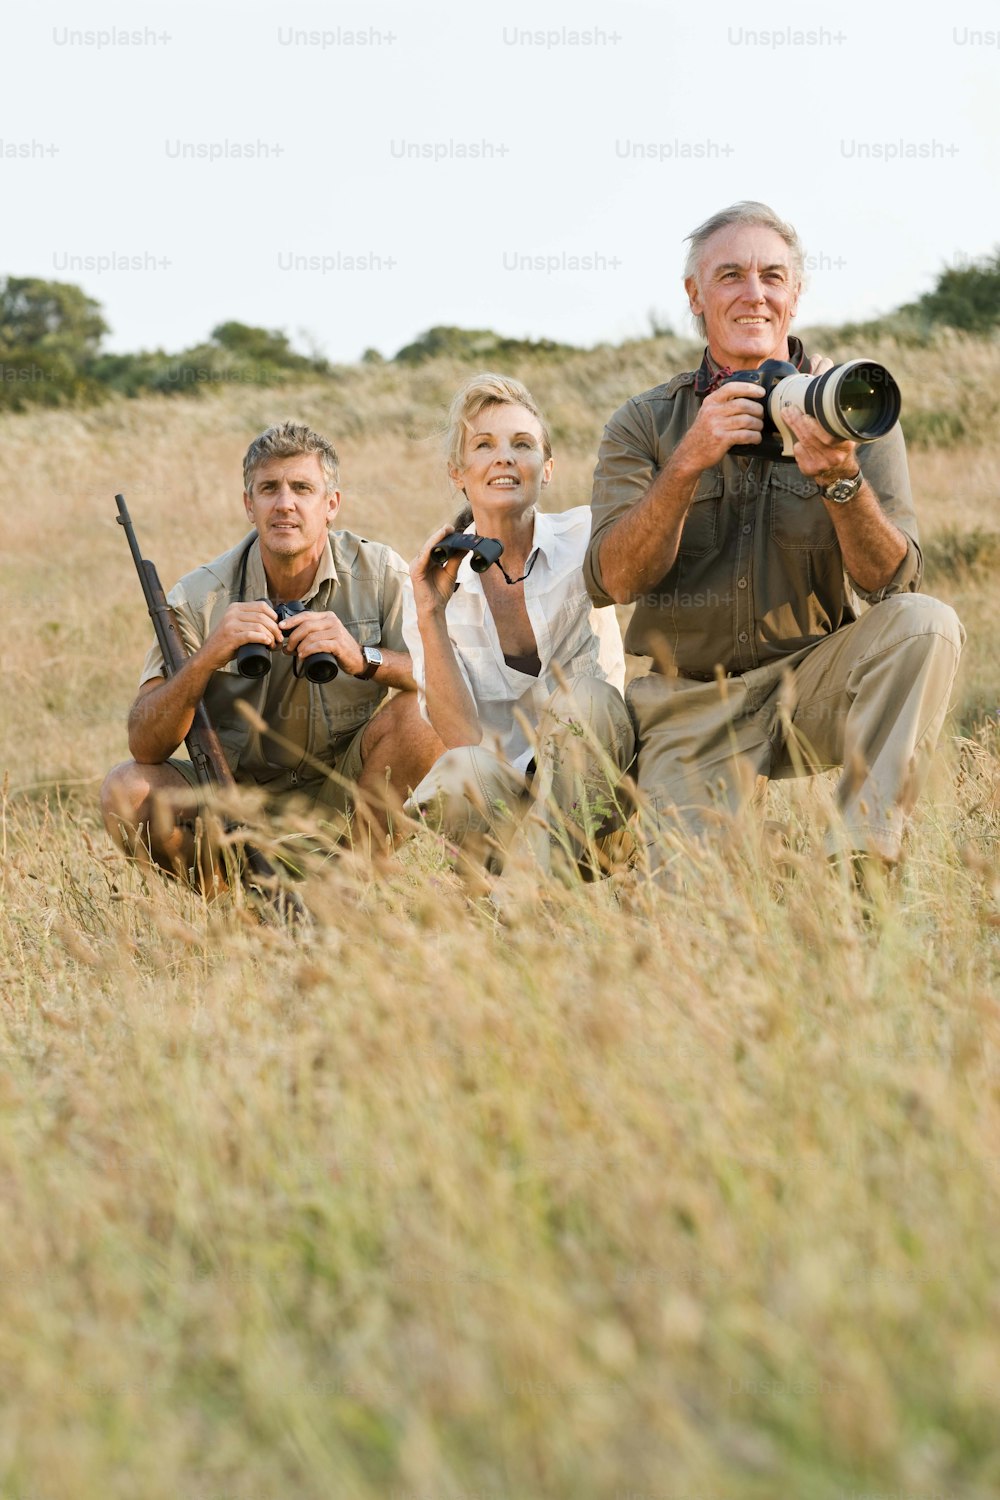 Eine Gruppe von Menschen, die auf einem Feld fotografieren